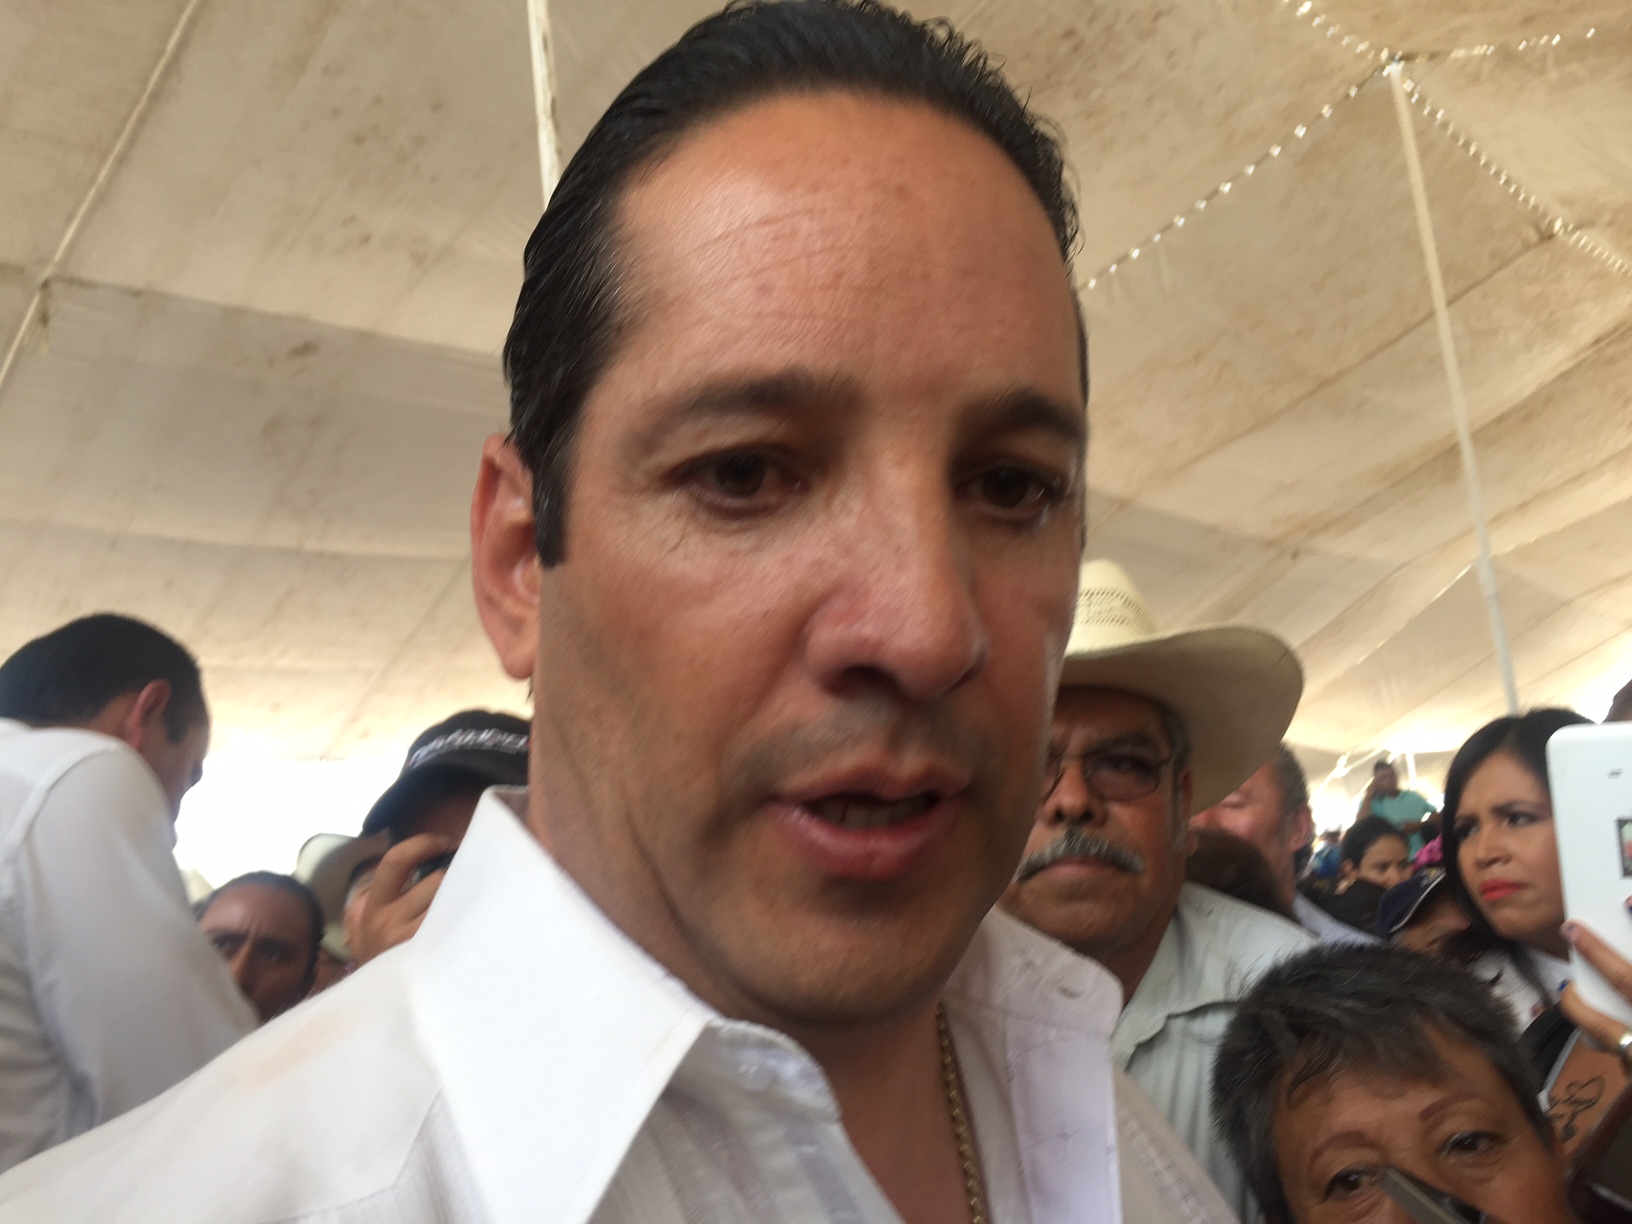  En Querétaro no hay detenidos políticos: Pancho Domínguez